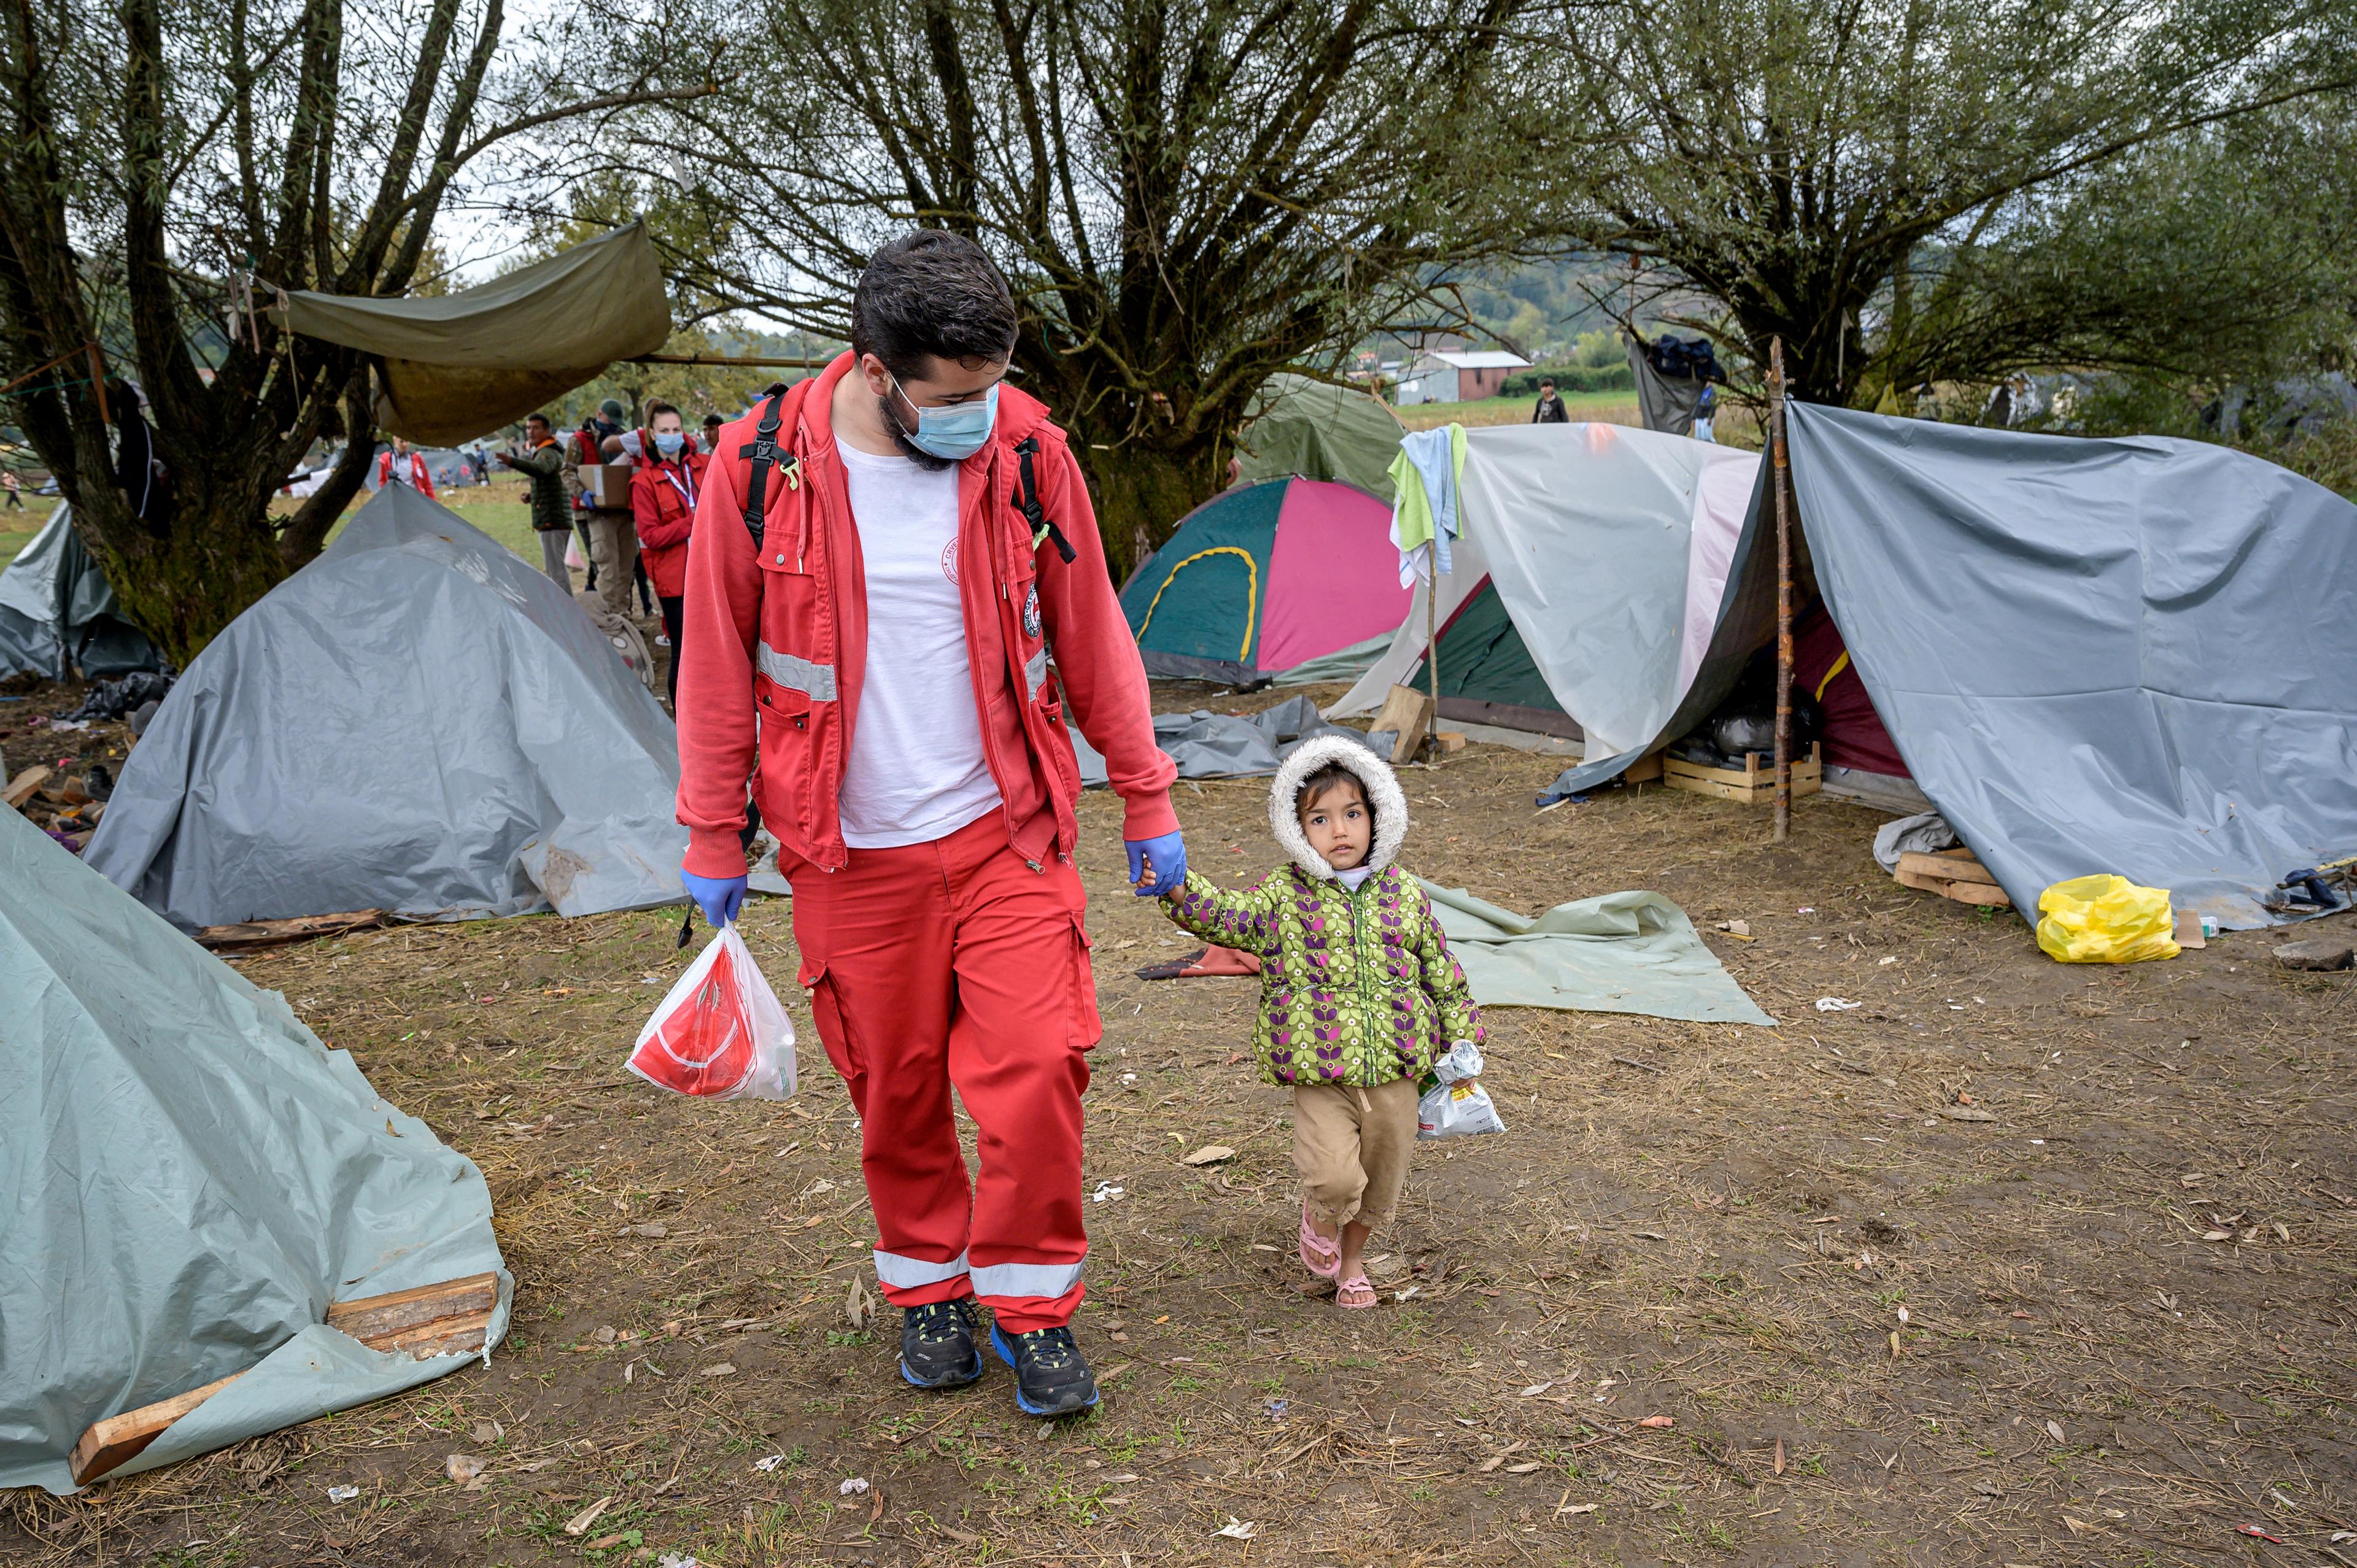 Un uomo che indossa pantaloni e giacca rossi tiene un bambino piccolo con la mano sinistra. Camminano insieme attraverso le tende situate in un'area verde. 